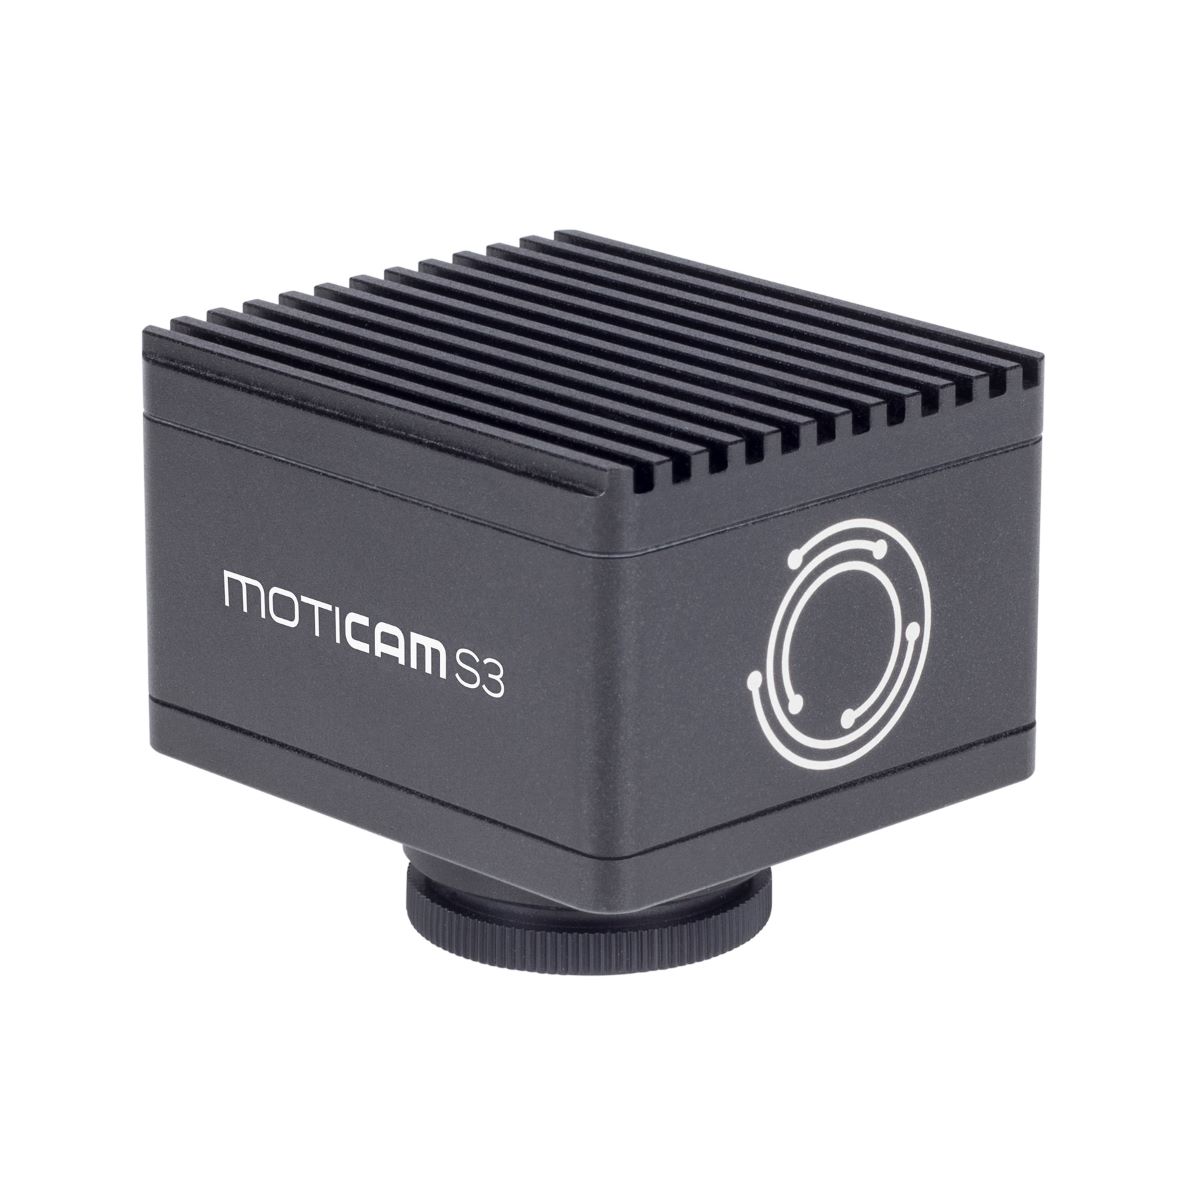 Moticam S3 Microscope Camera 3.0MP